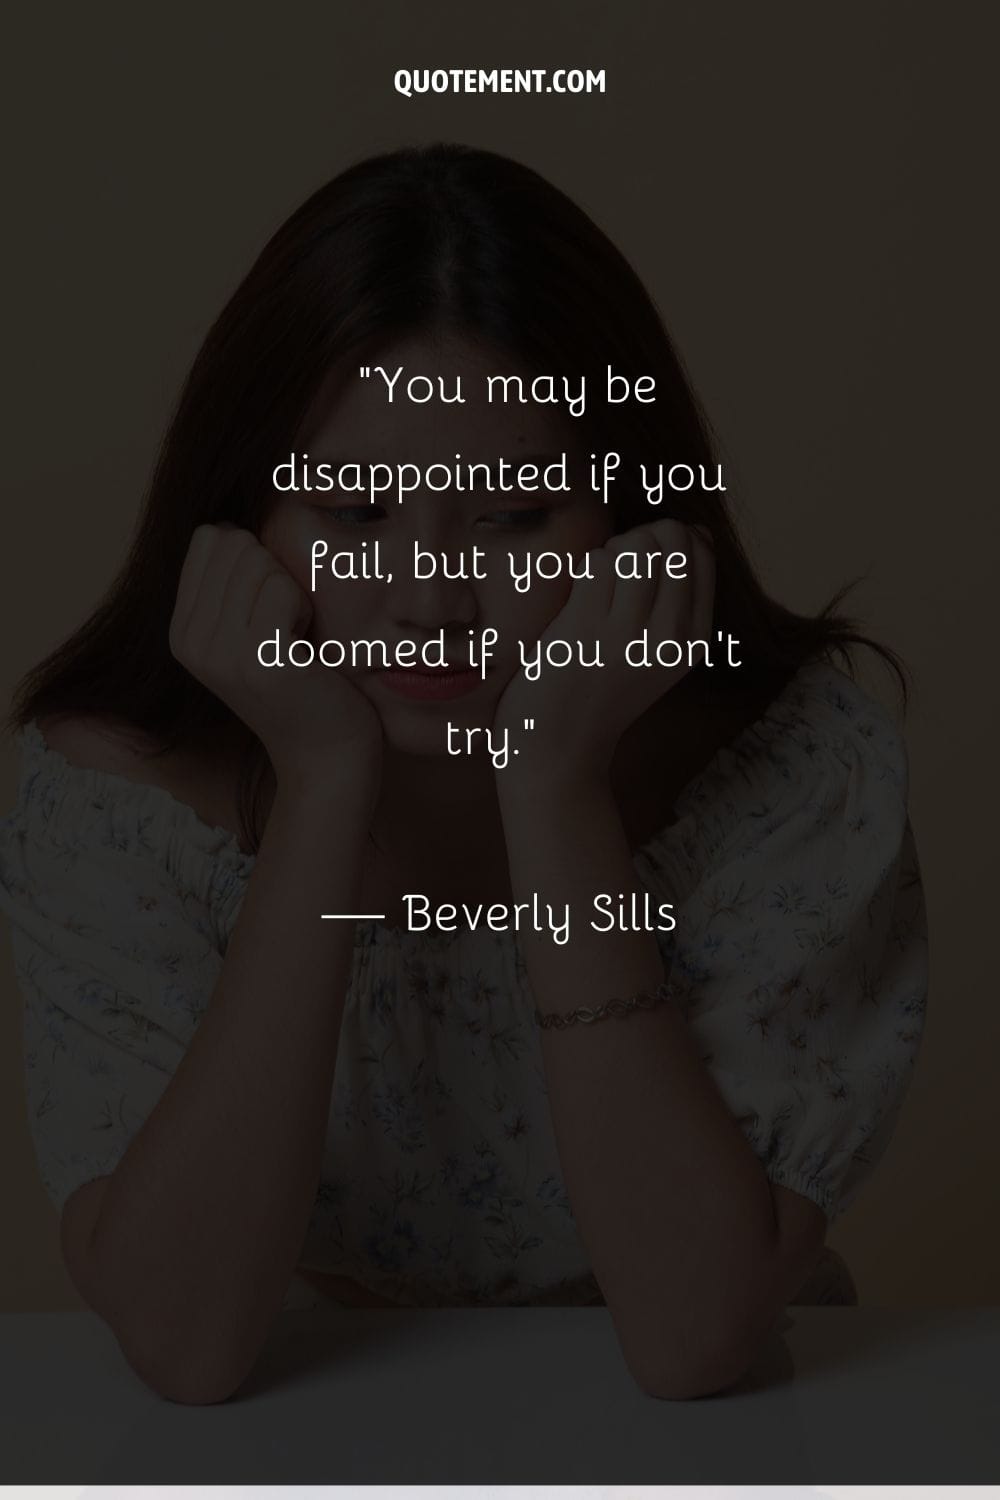 Puedes decepcionarte si fracasas, pero estás condenado si no lo intentas.